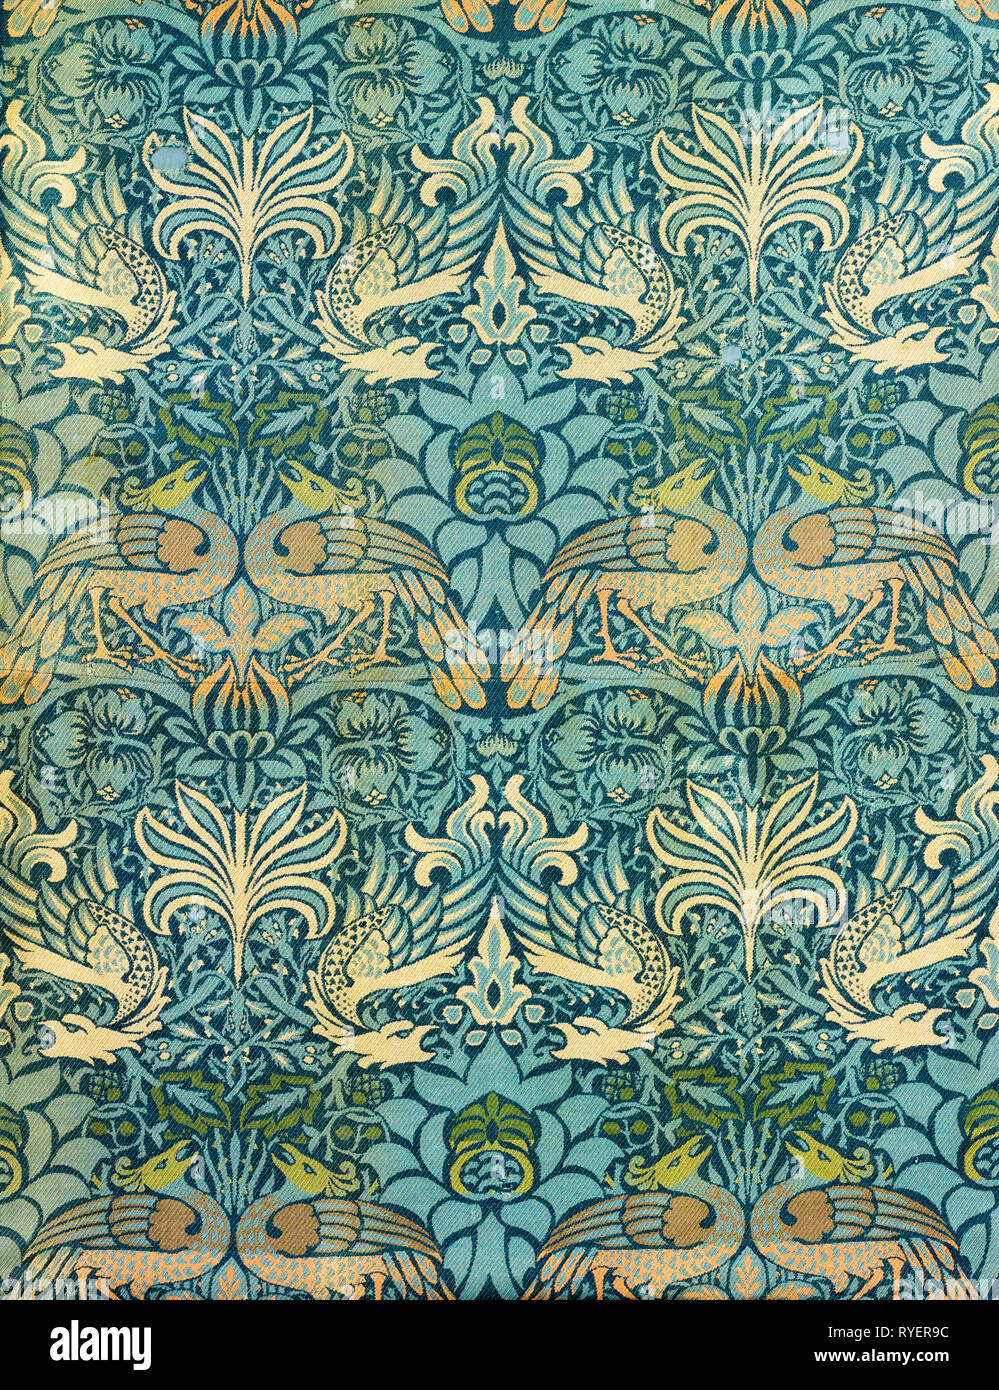 William Morris Peacock Fabric